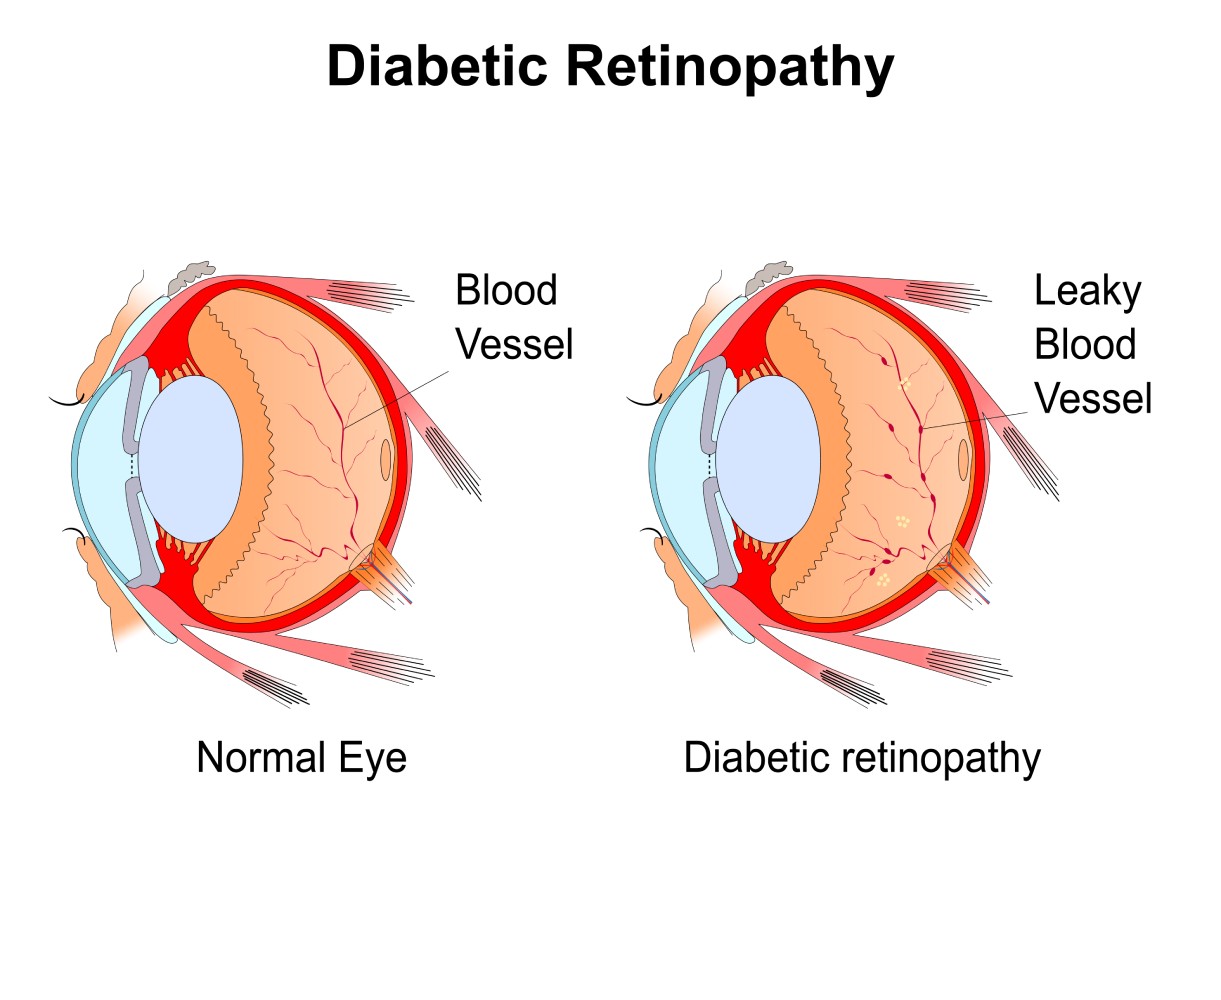 Diabetic Eye Diagram